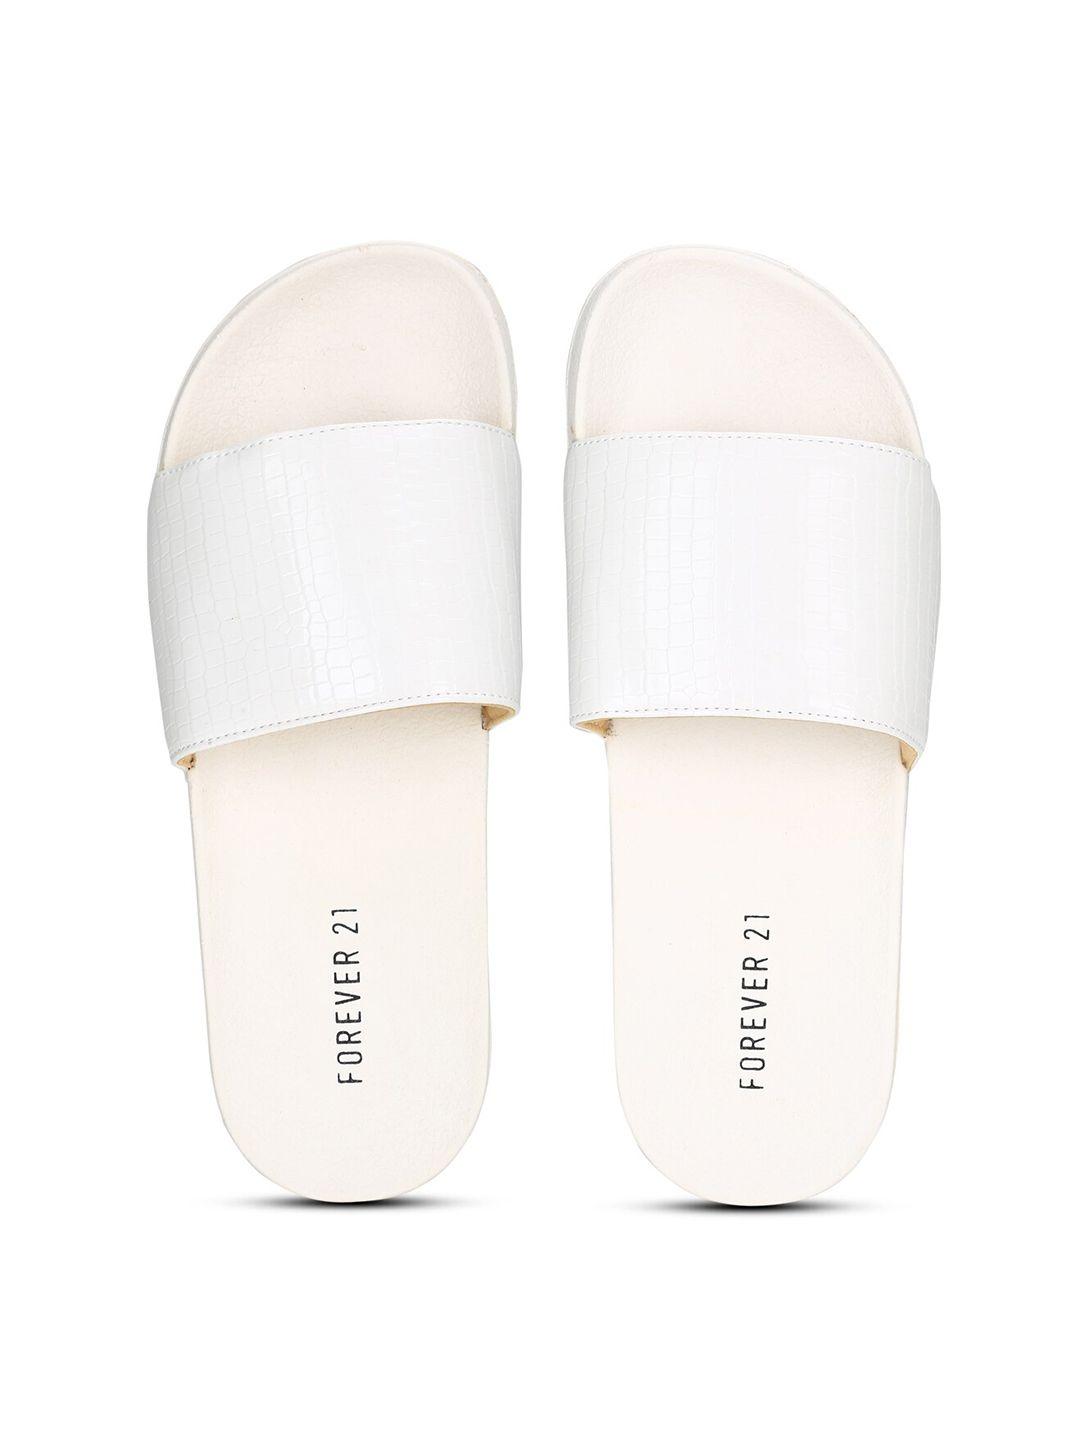 forever-21-women-white-room-slippers